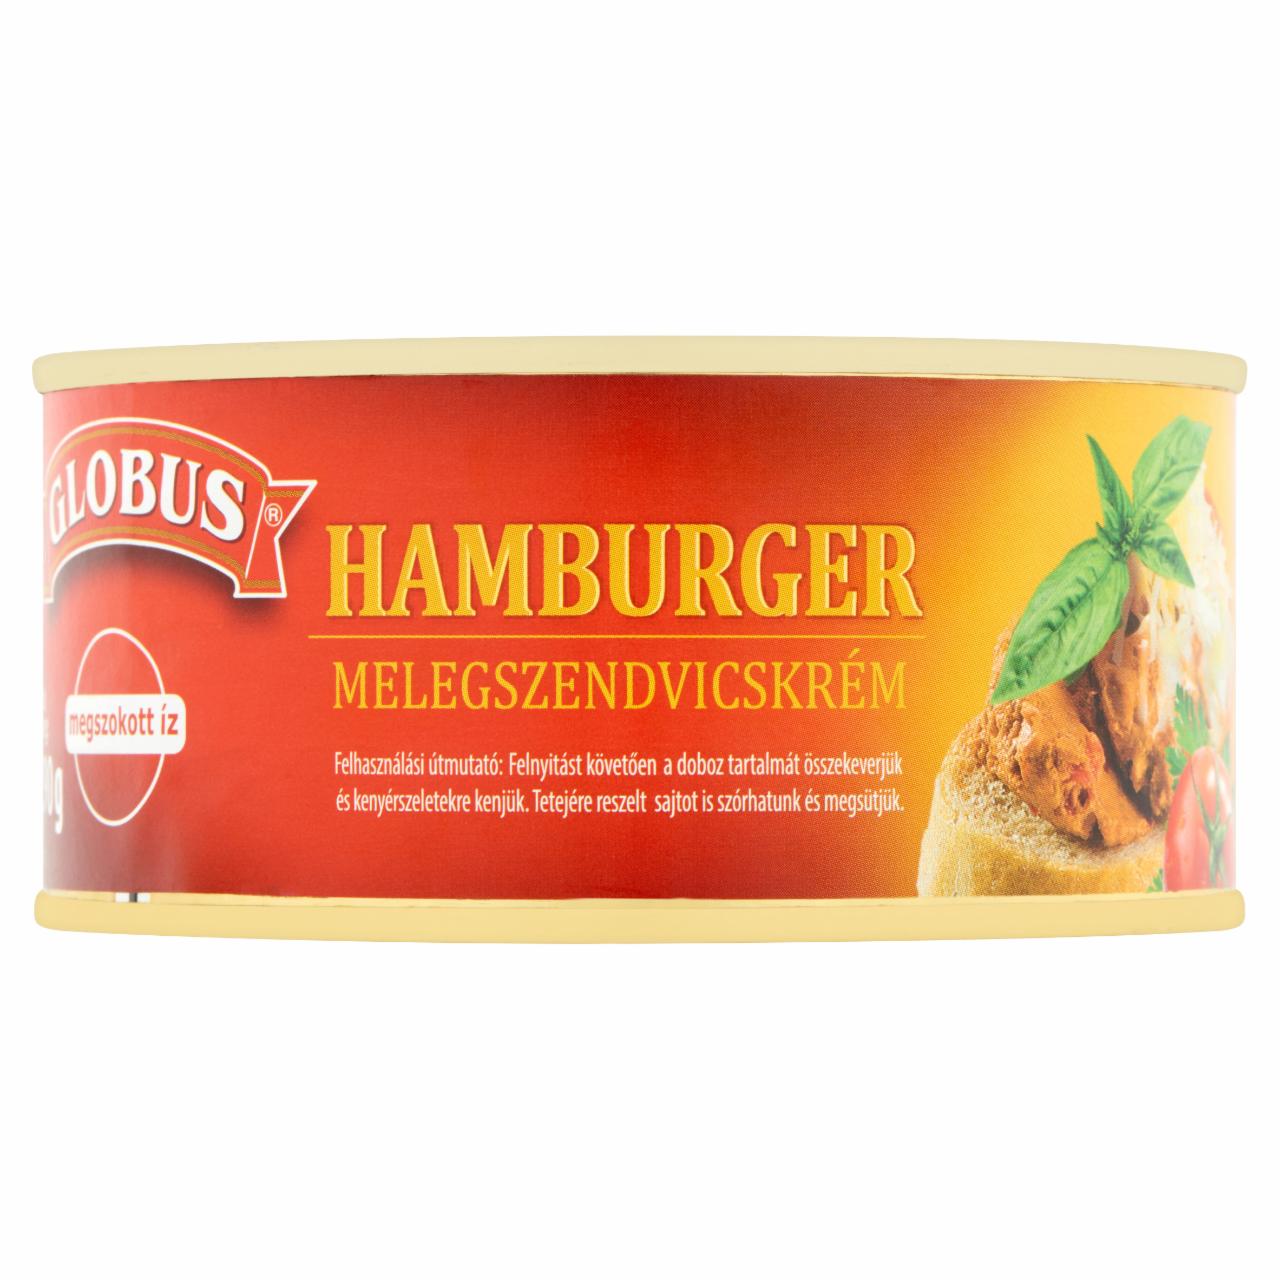 Képek - Globus hamburger melegszendvicskrém 290 g